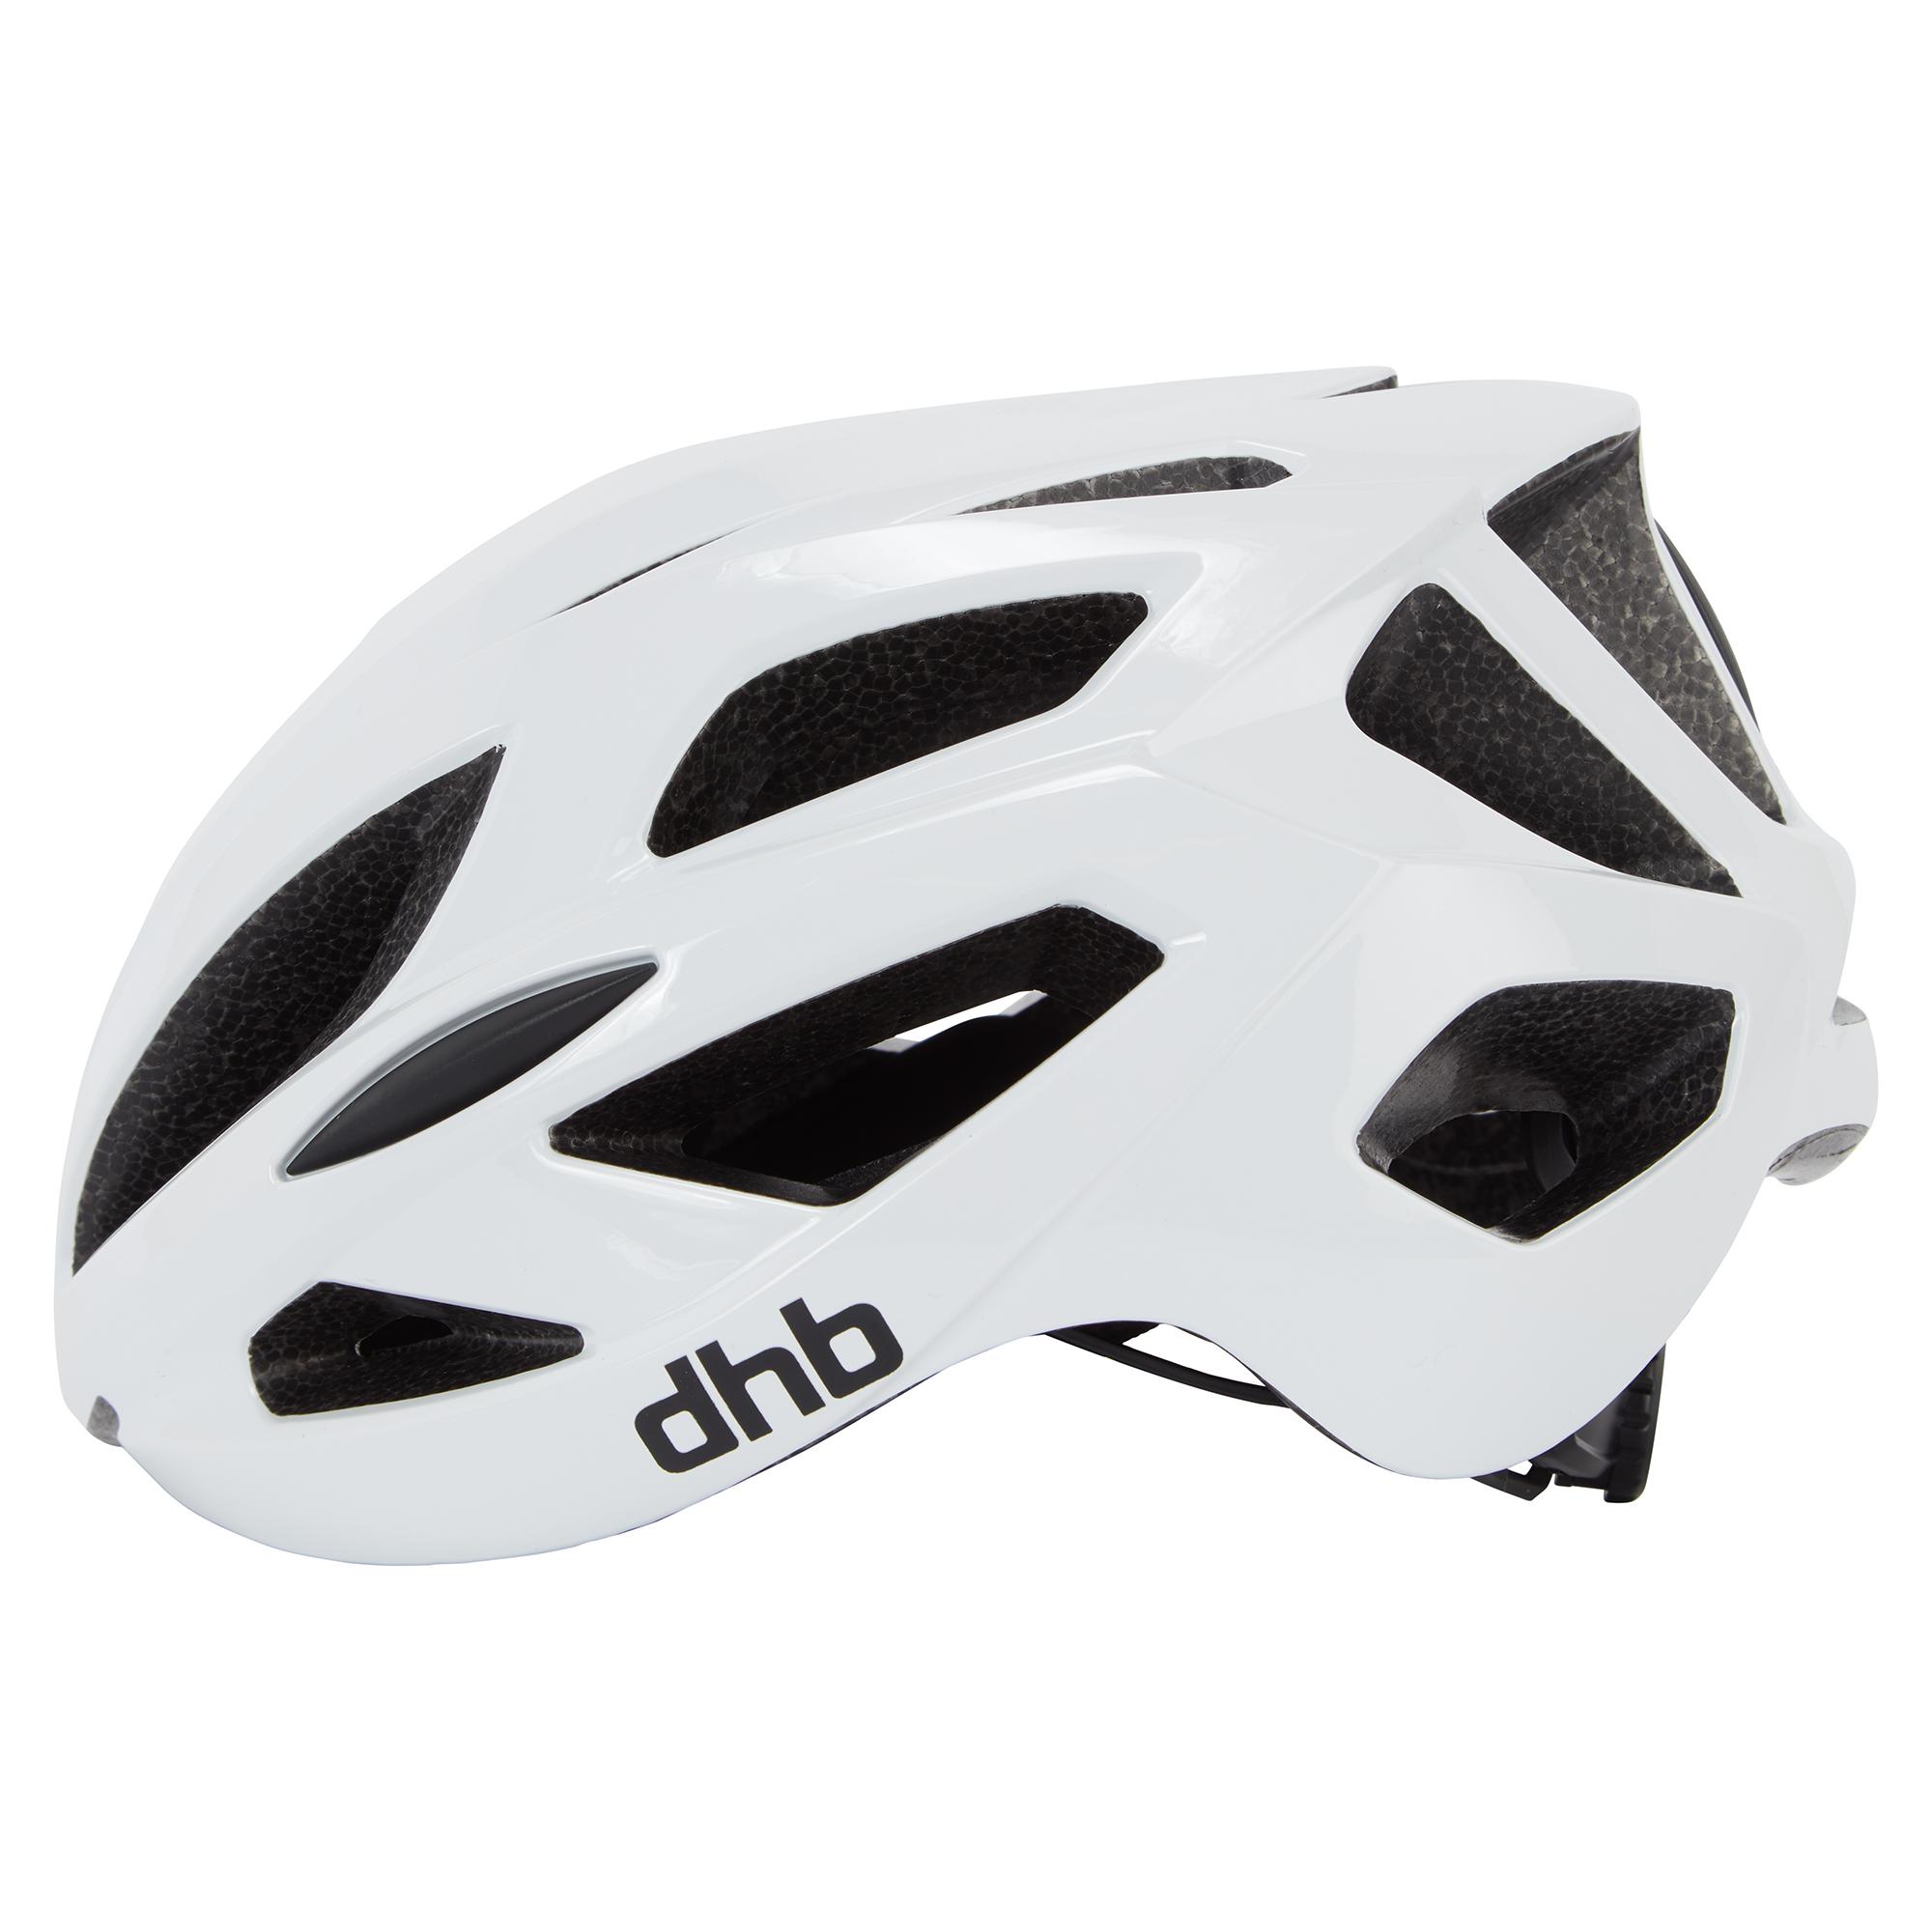 Dhb R3.0 Road Helmet  White